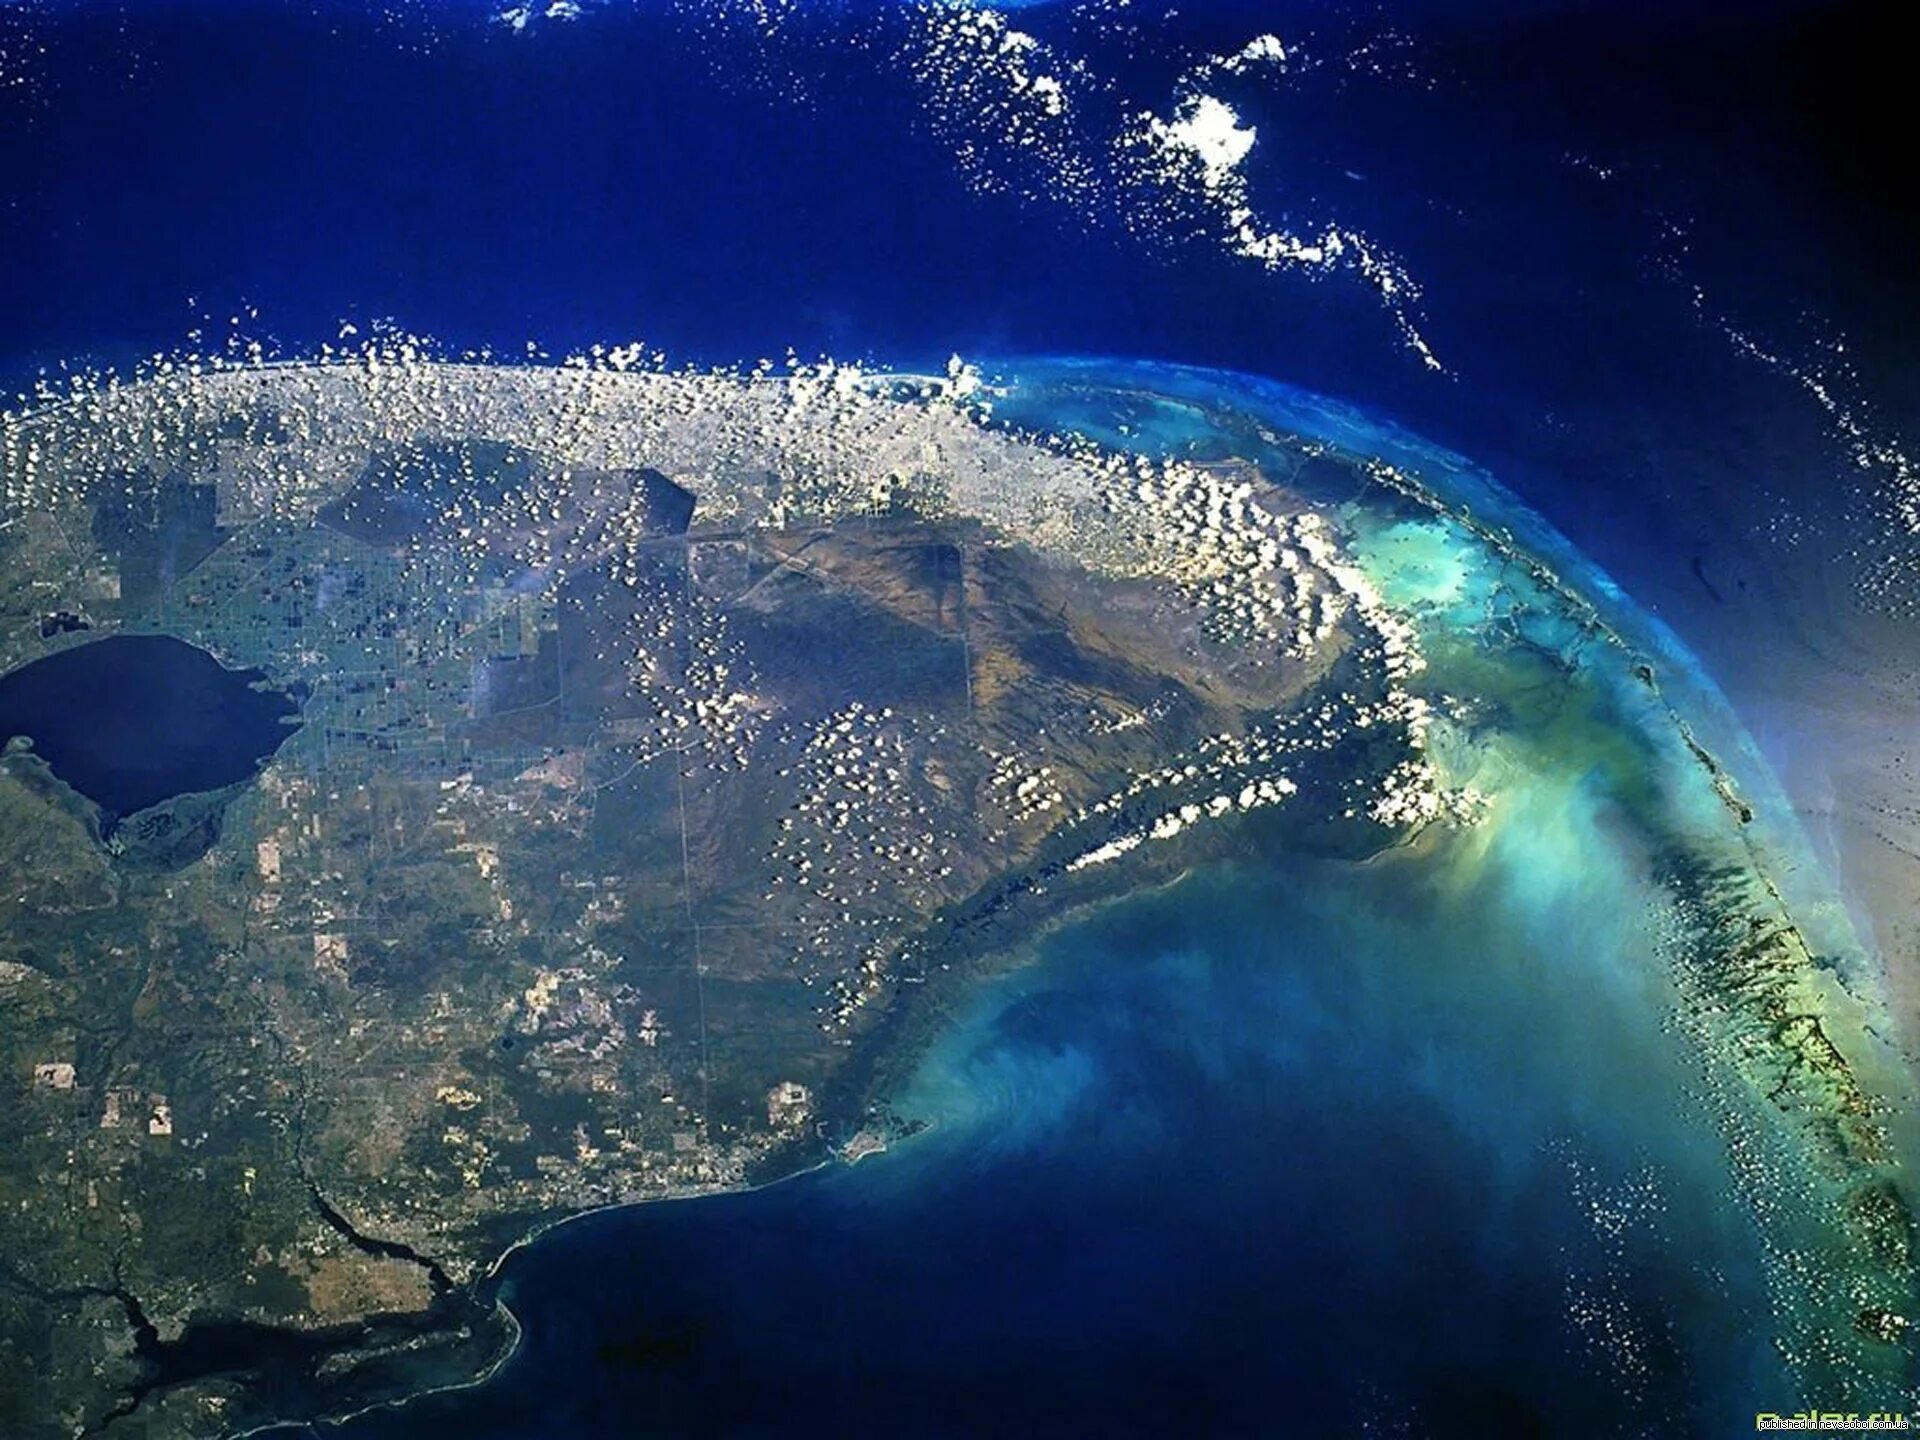 Планета океан название. Снимки из космоса. Атлантический океан из космоса. Южная Америка вид из космоса. Океан вид из космоса.